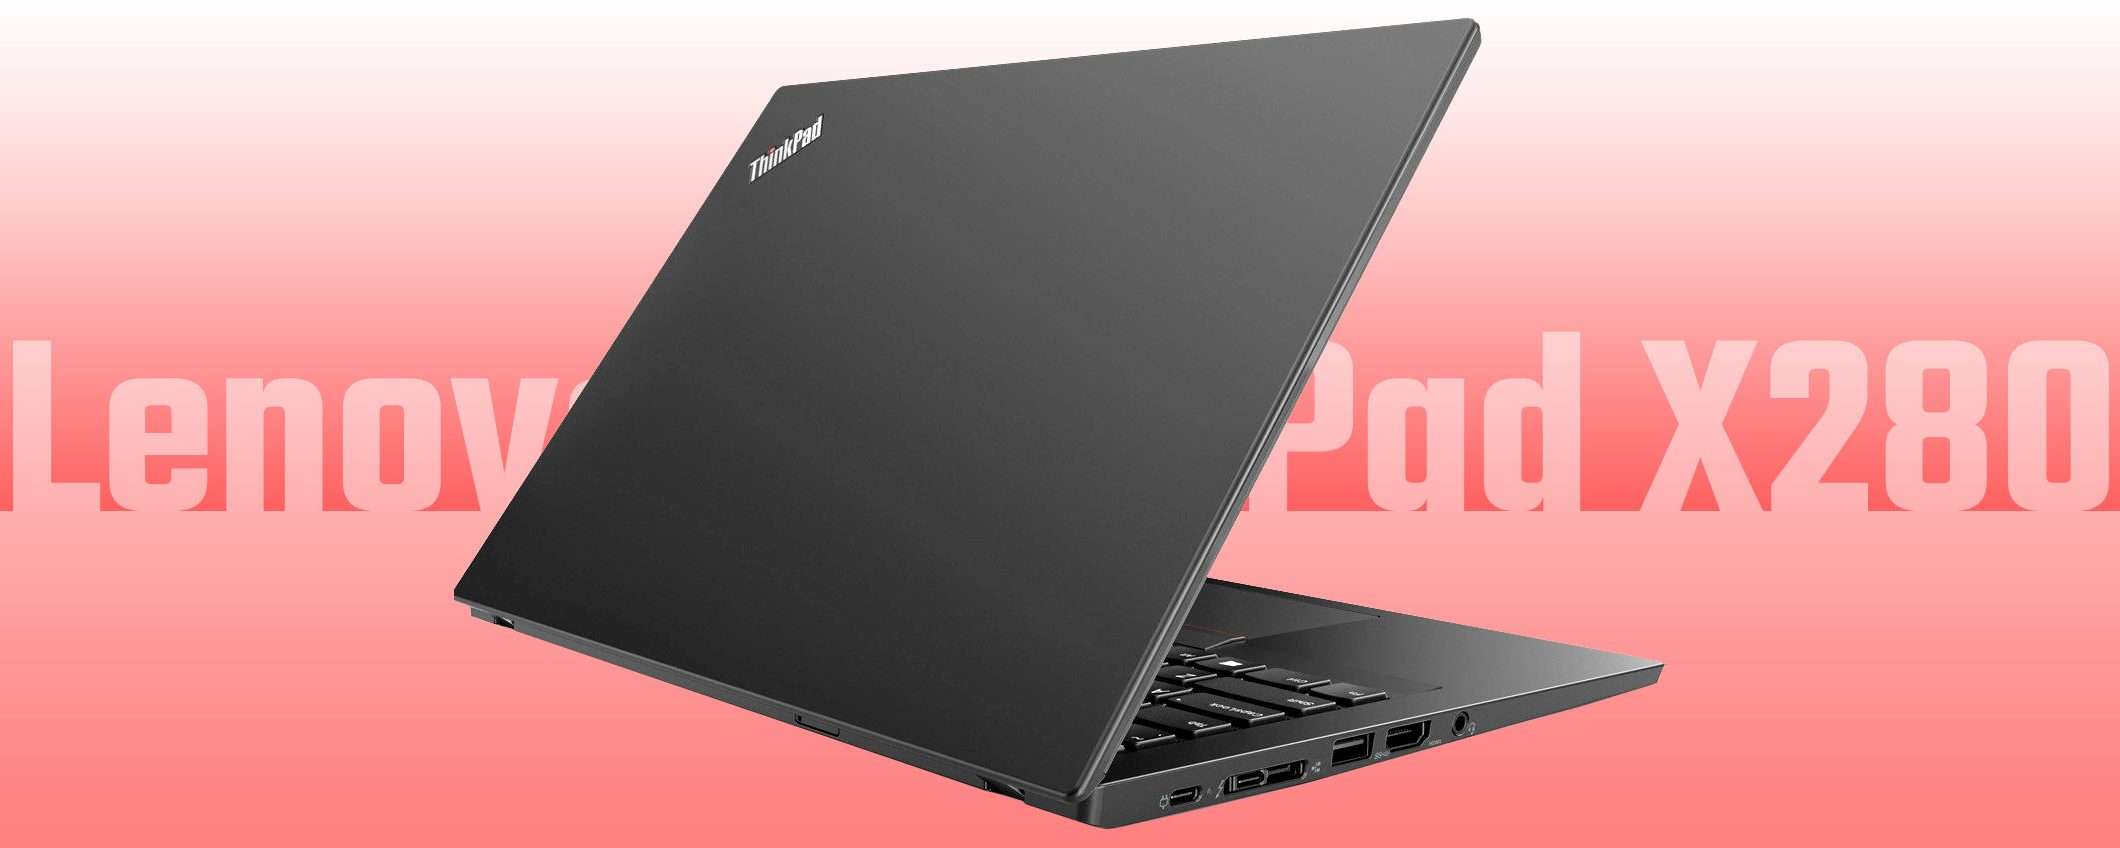 Lenovo ThinkPad X280: il notebook a soli 206 euro